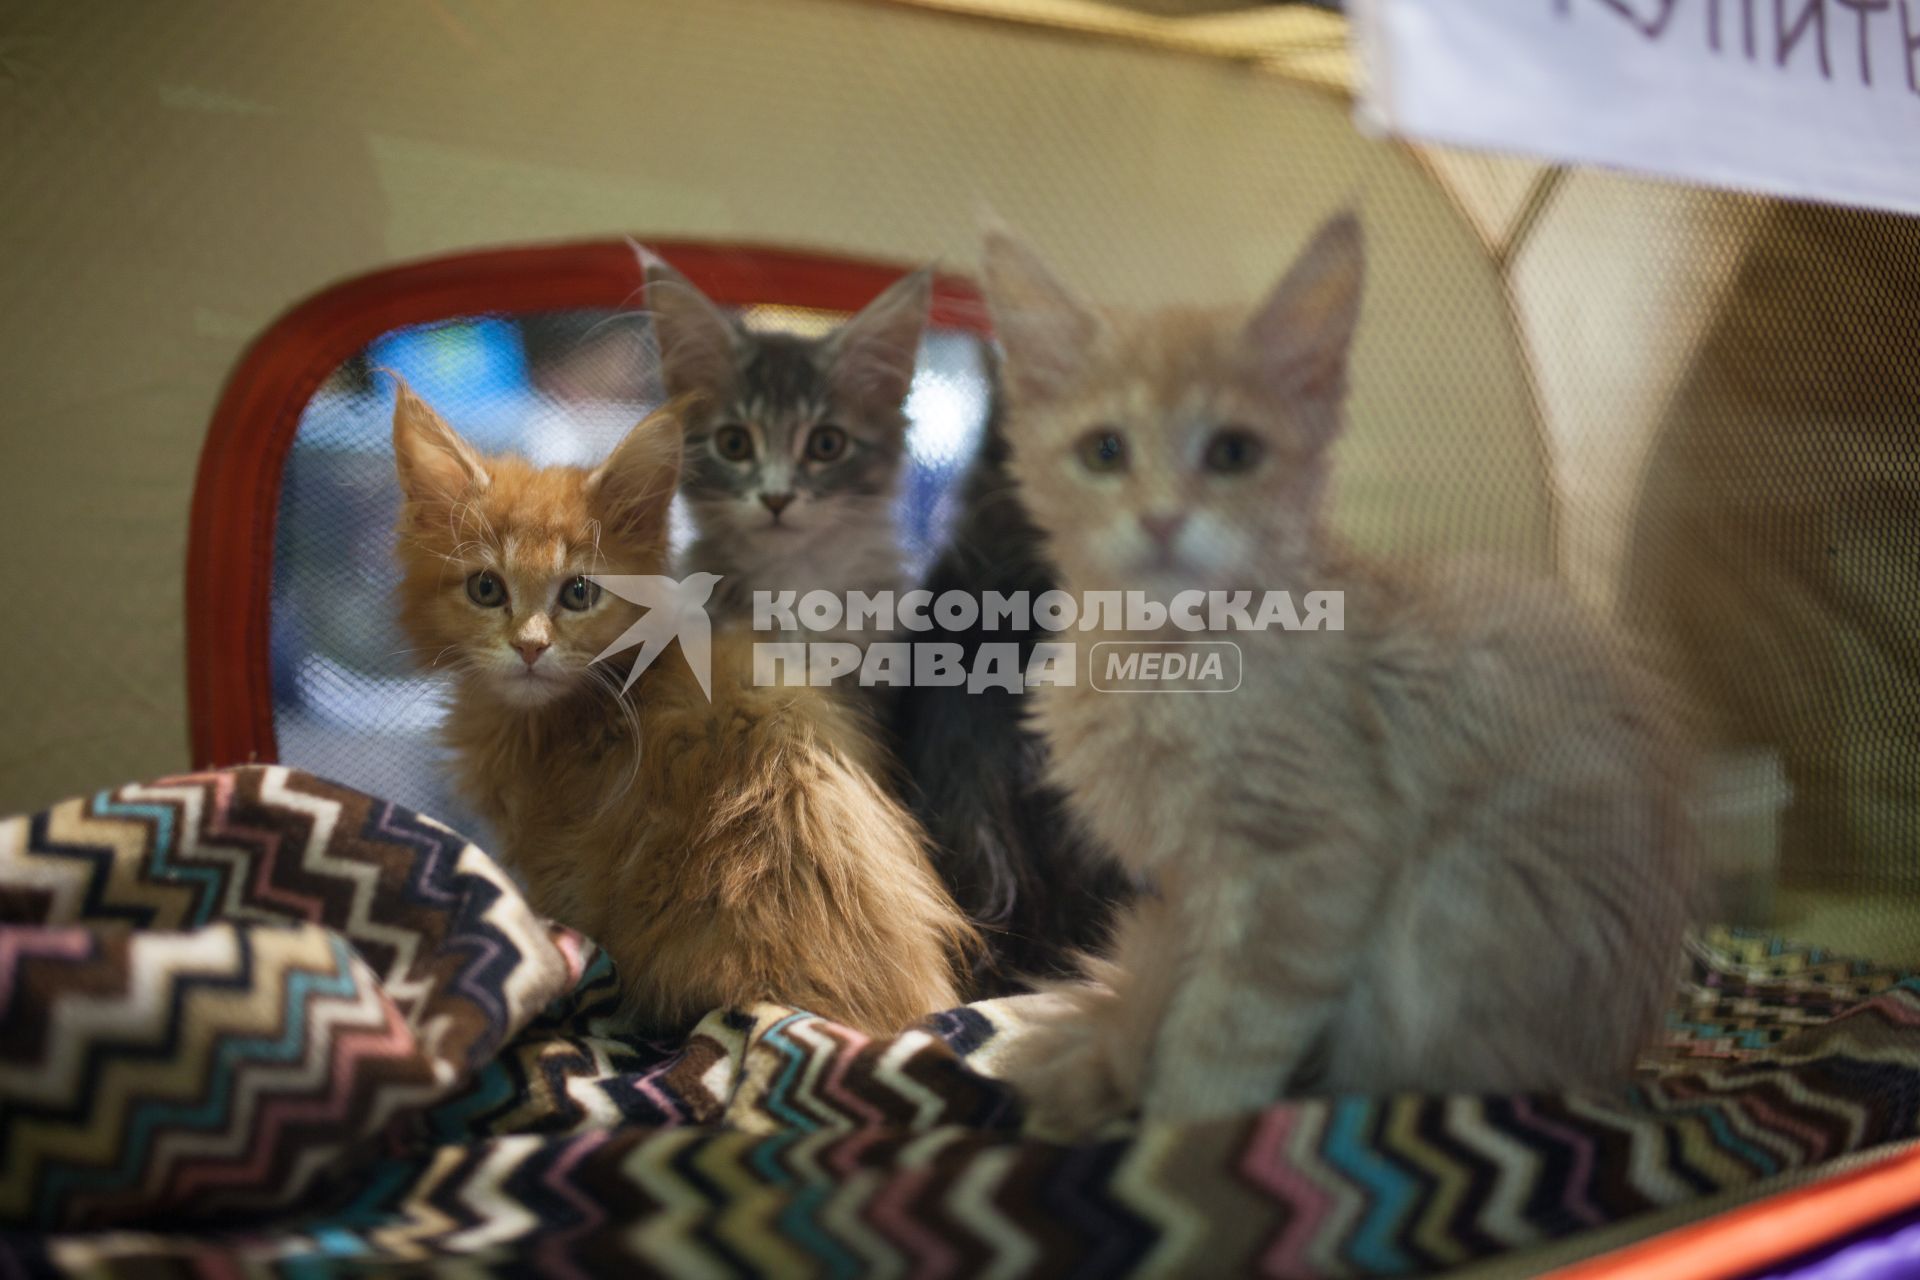 Ставрополь. Котята на международной выставке кошек.